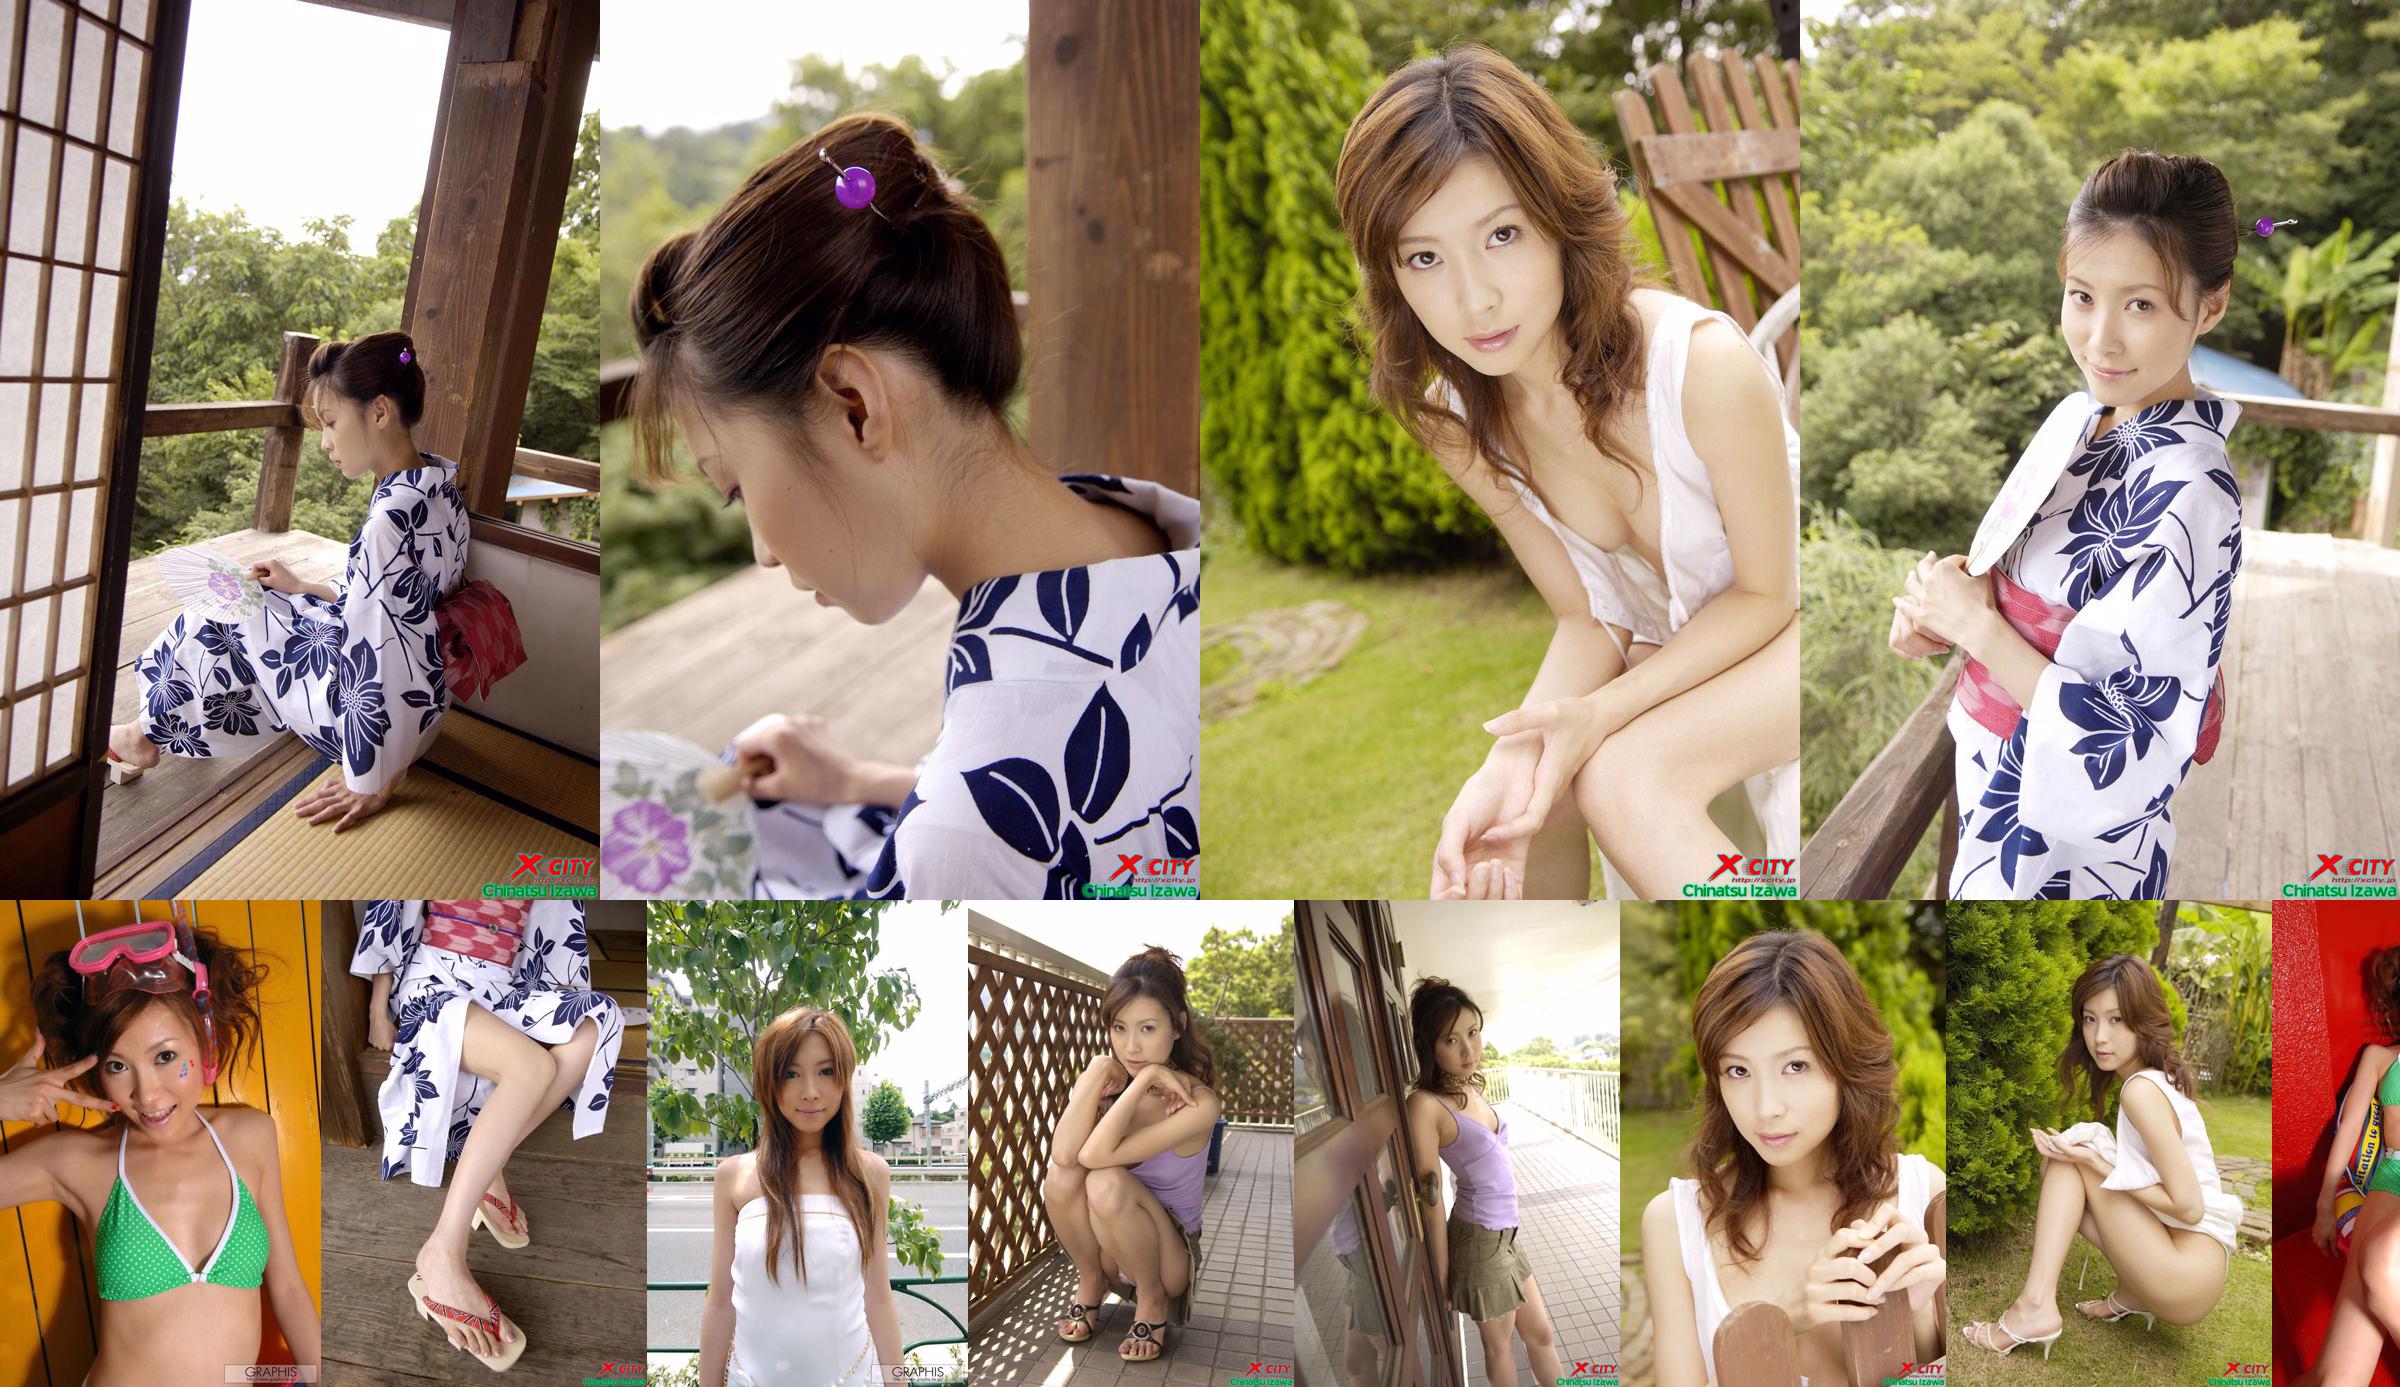 [X-City] WEB No.020 Izawa Chika "Secret Summer" No.22ffda Trang 3